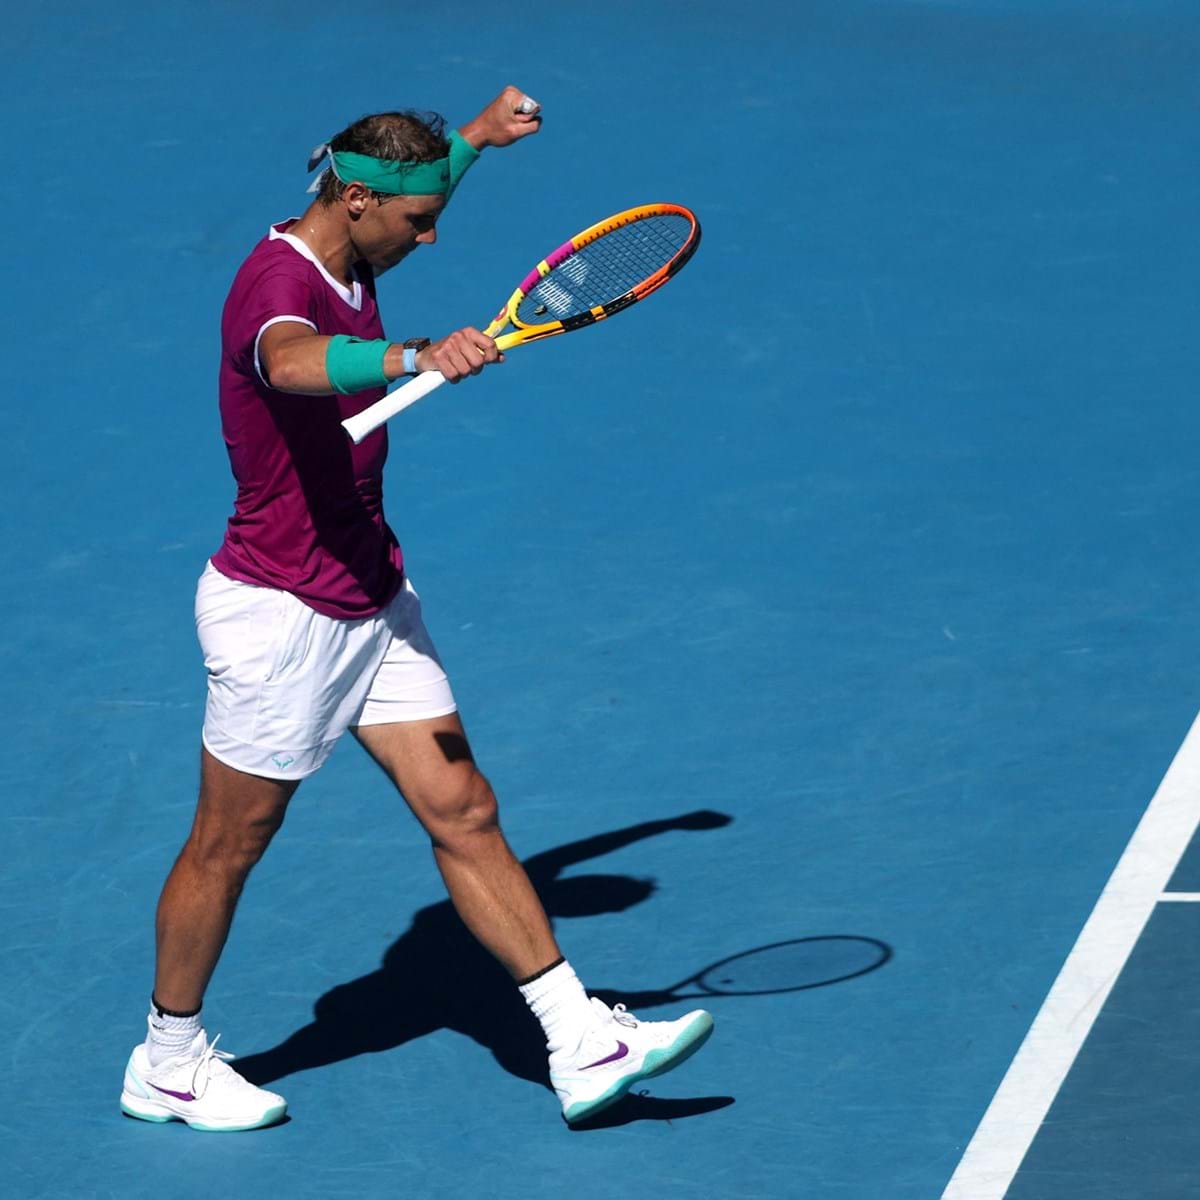 Regresso à vista para Rafael Nadal: Open da Austrália confirma que